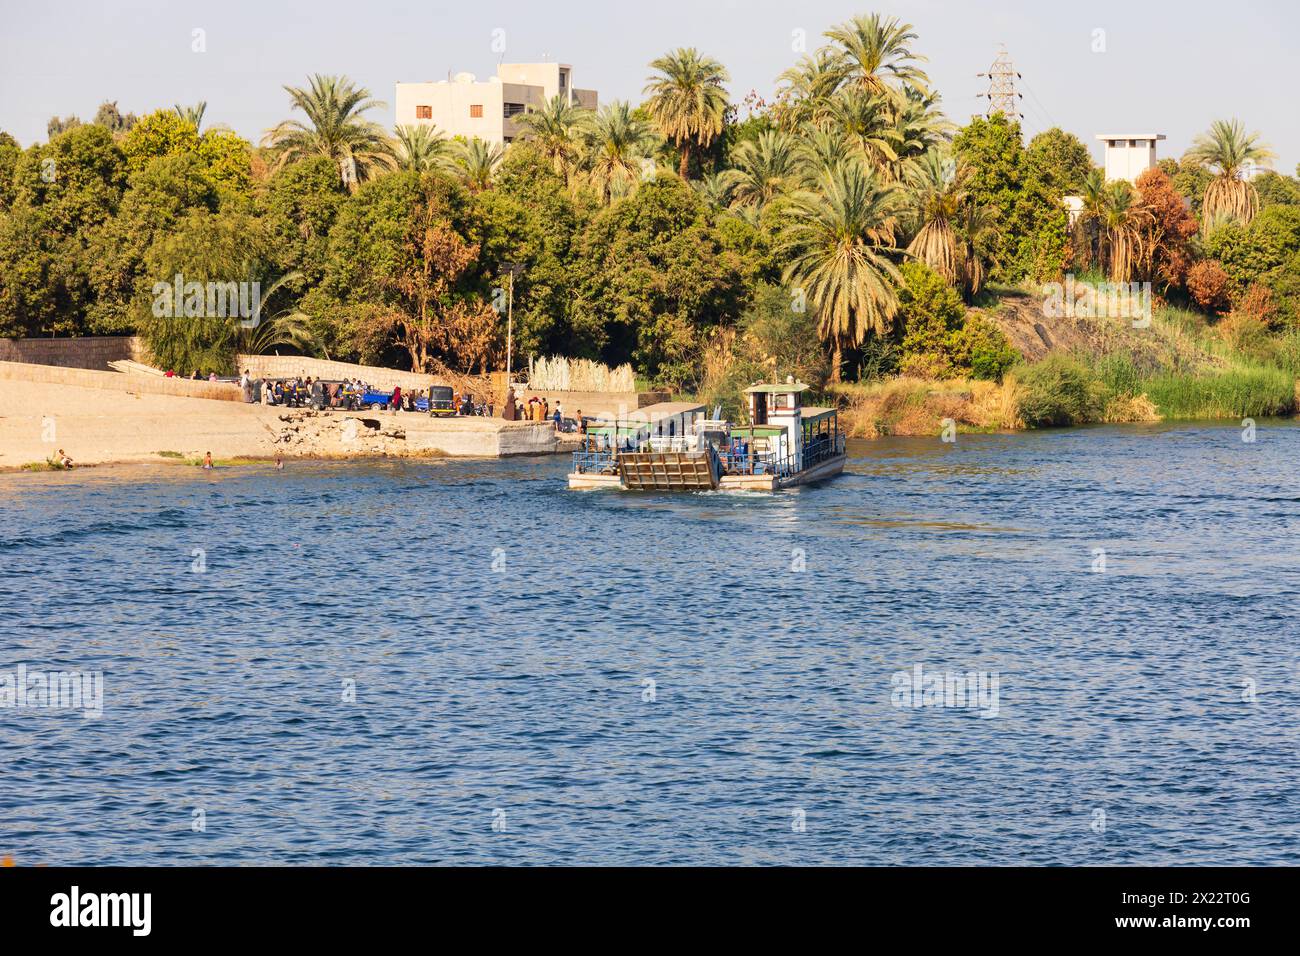 Bateau de ferry de voiture et de passagers, près de Kom Ombo, le nil entre Louxor et Assouan, Egypte Banque D'Images